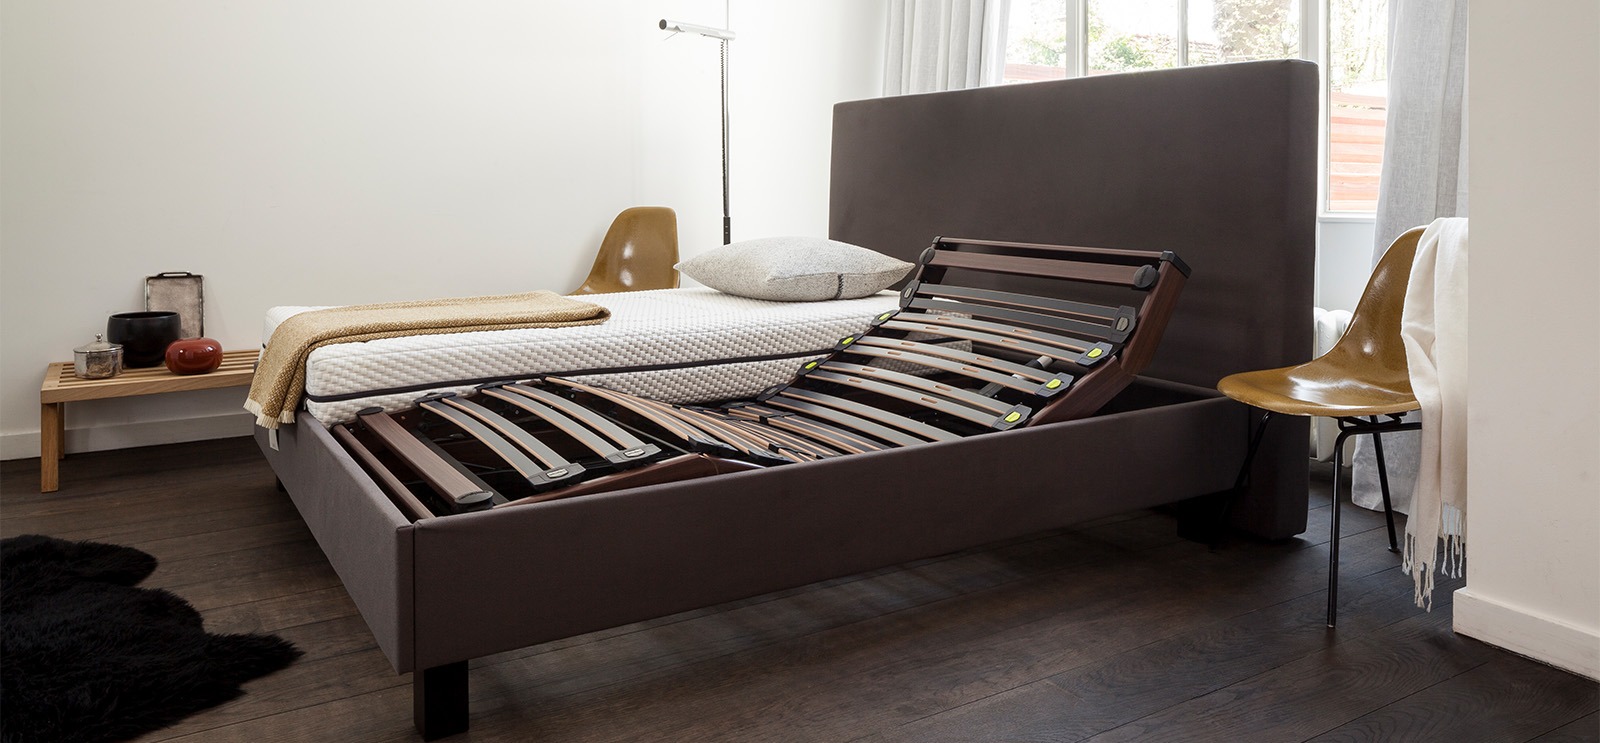 uitdrukking Hopelijk Reusachtig Beste bedbodem om heerlijk fris te slapen | Cornelis Bedding